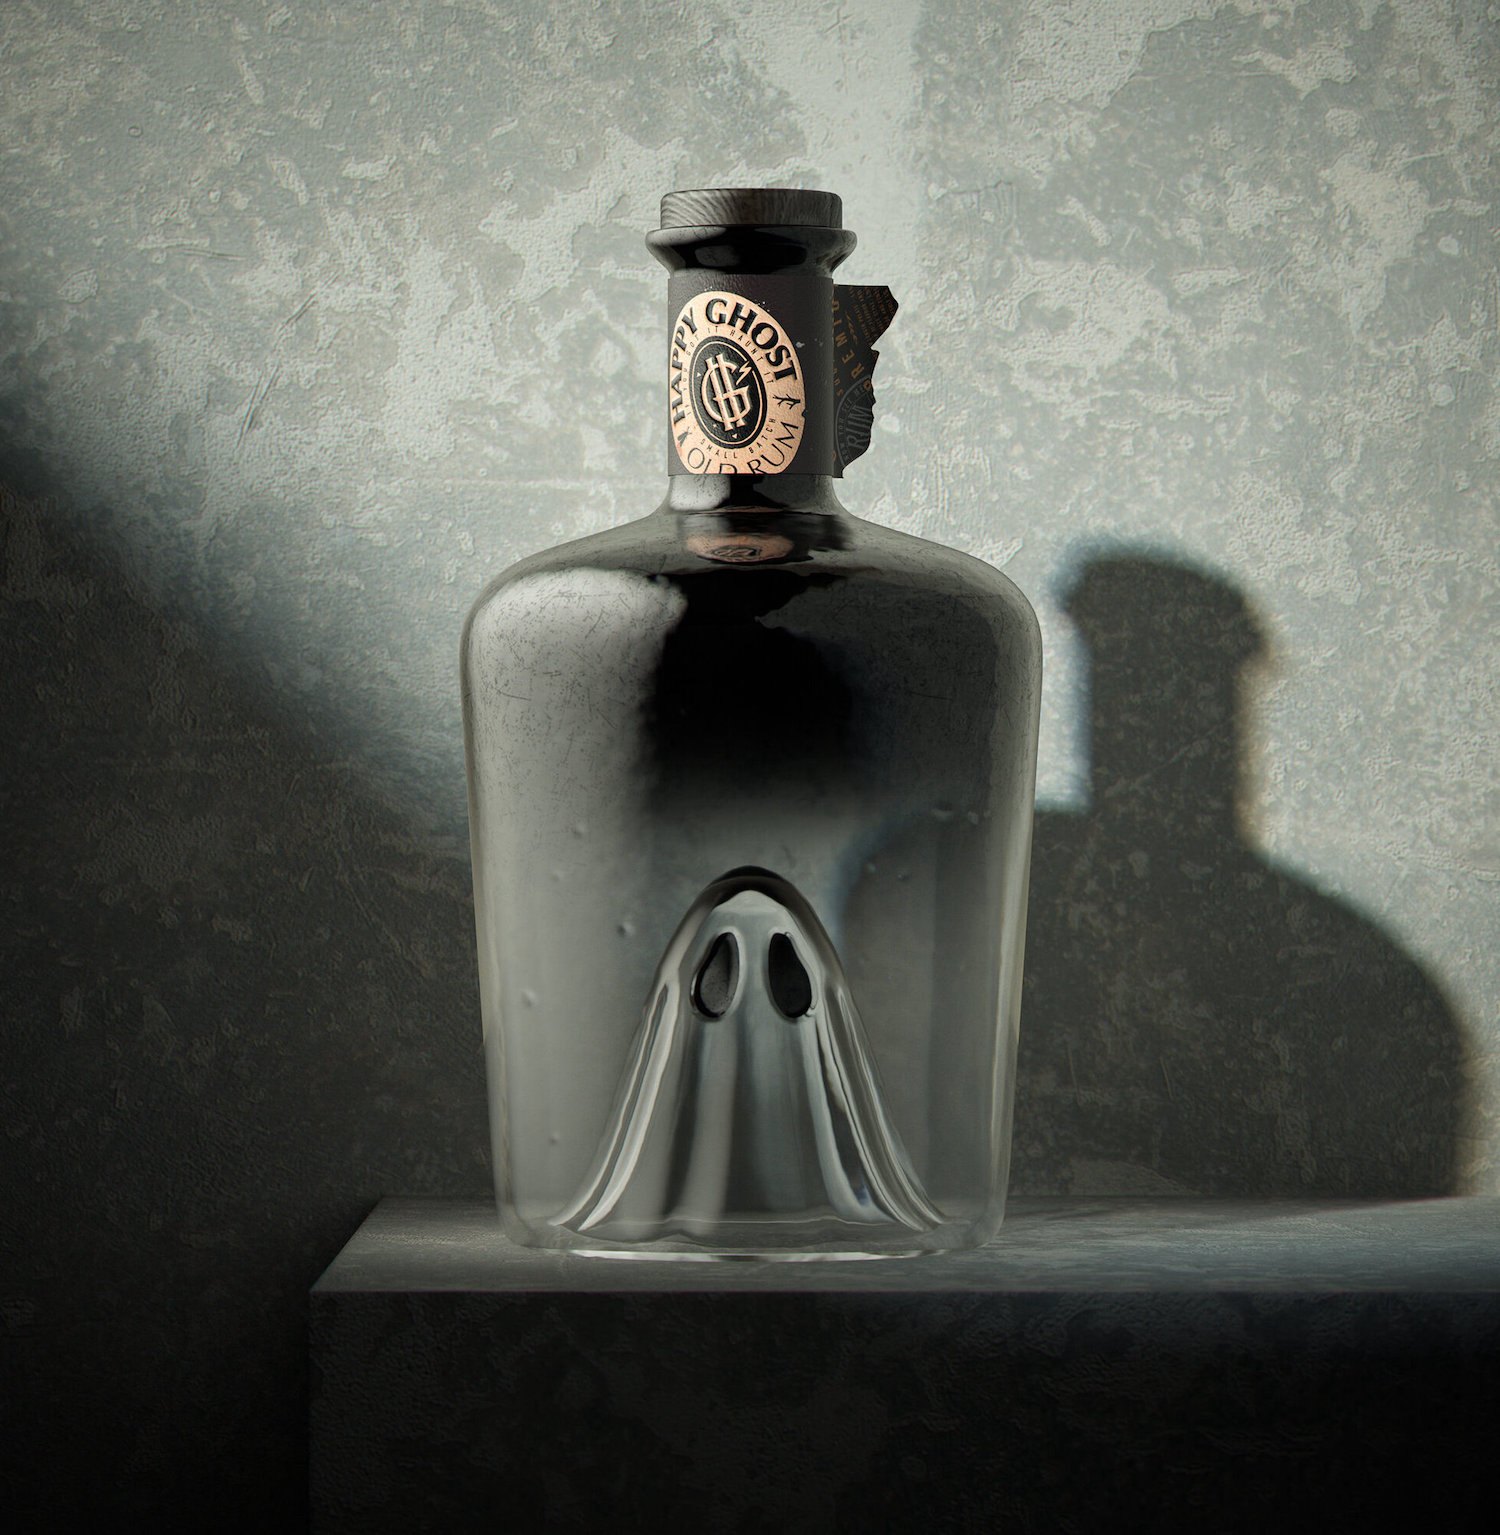 Cette bouteille de rhum intègre un petit fantôme dans son design